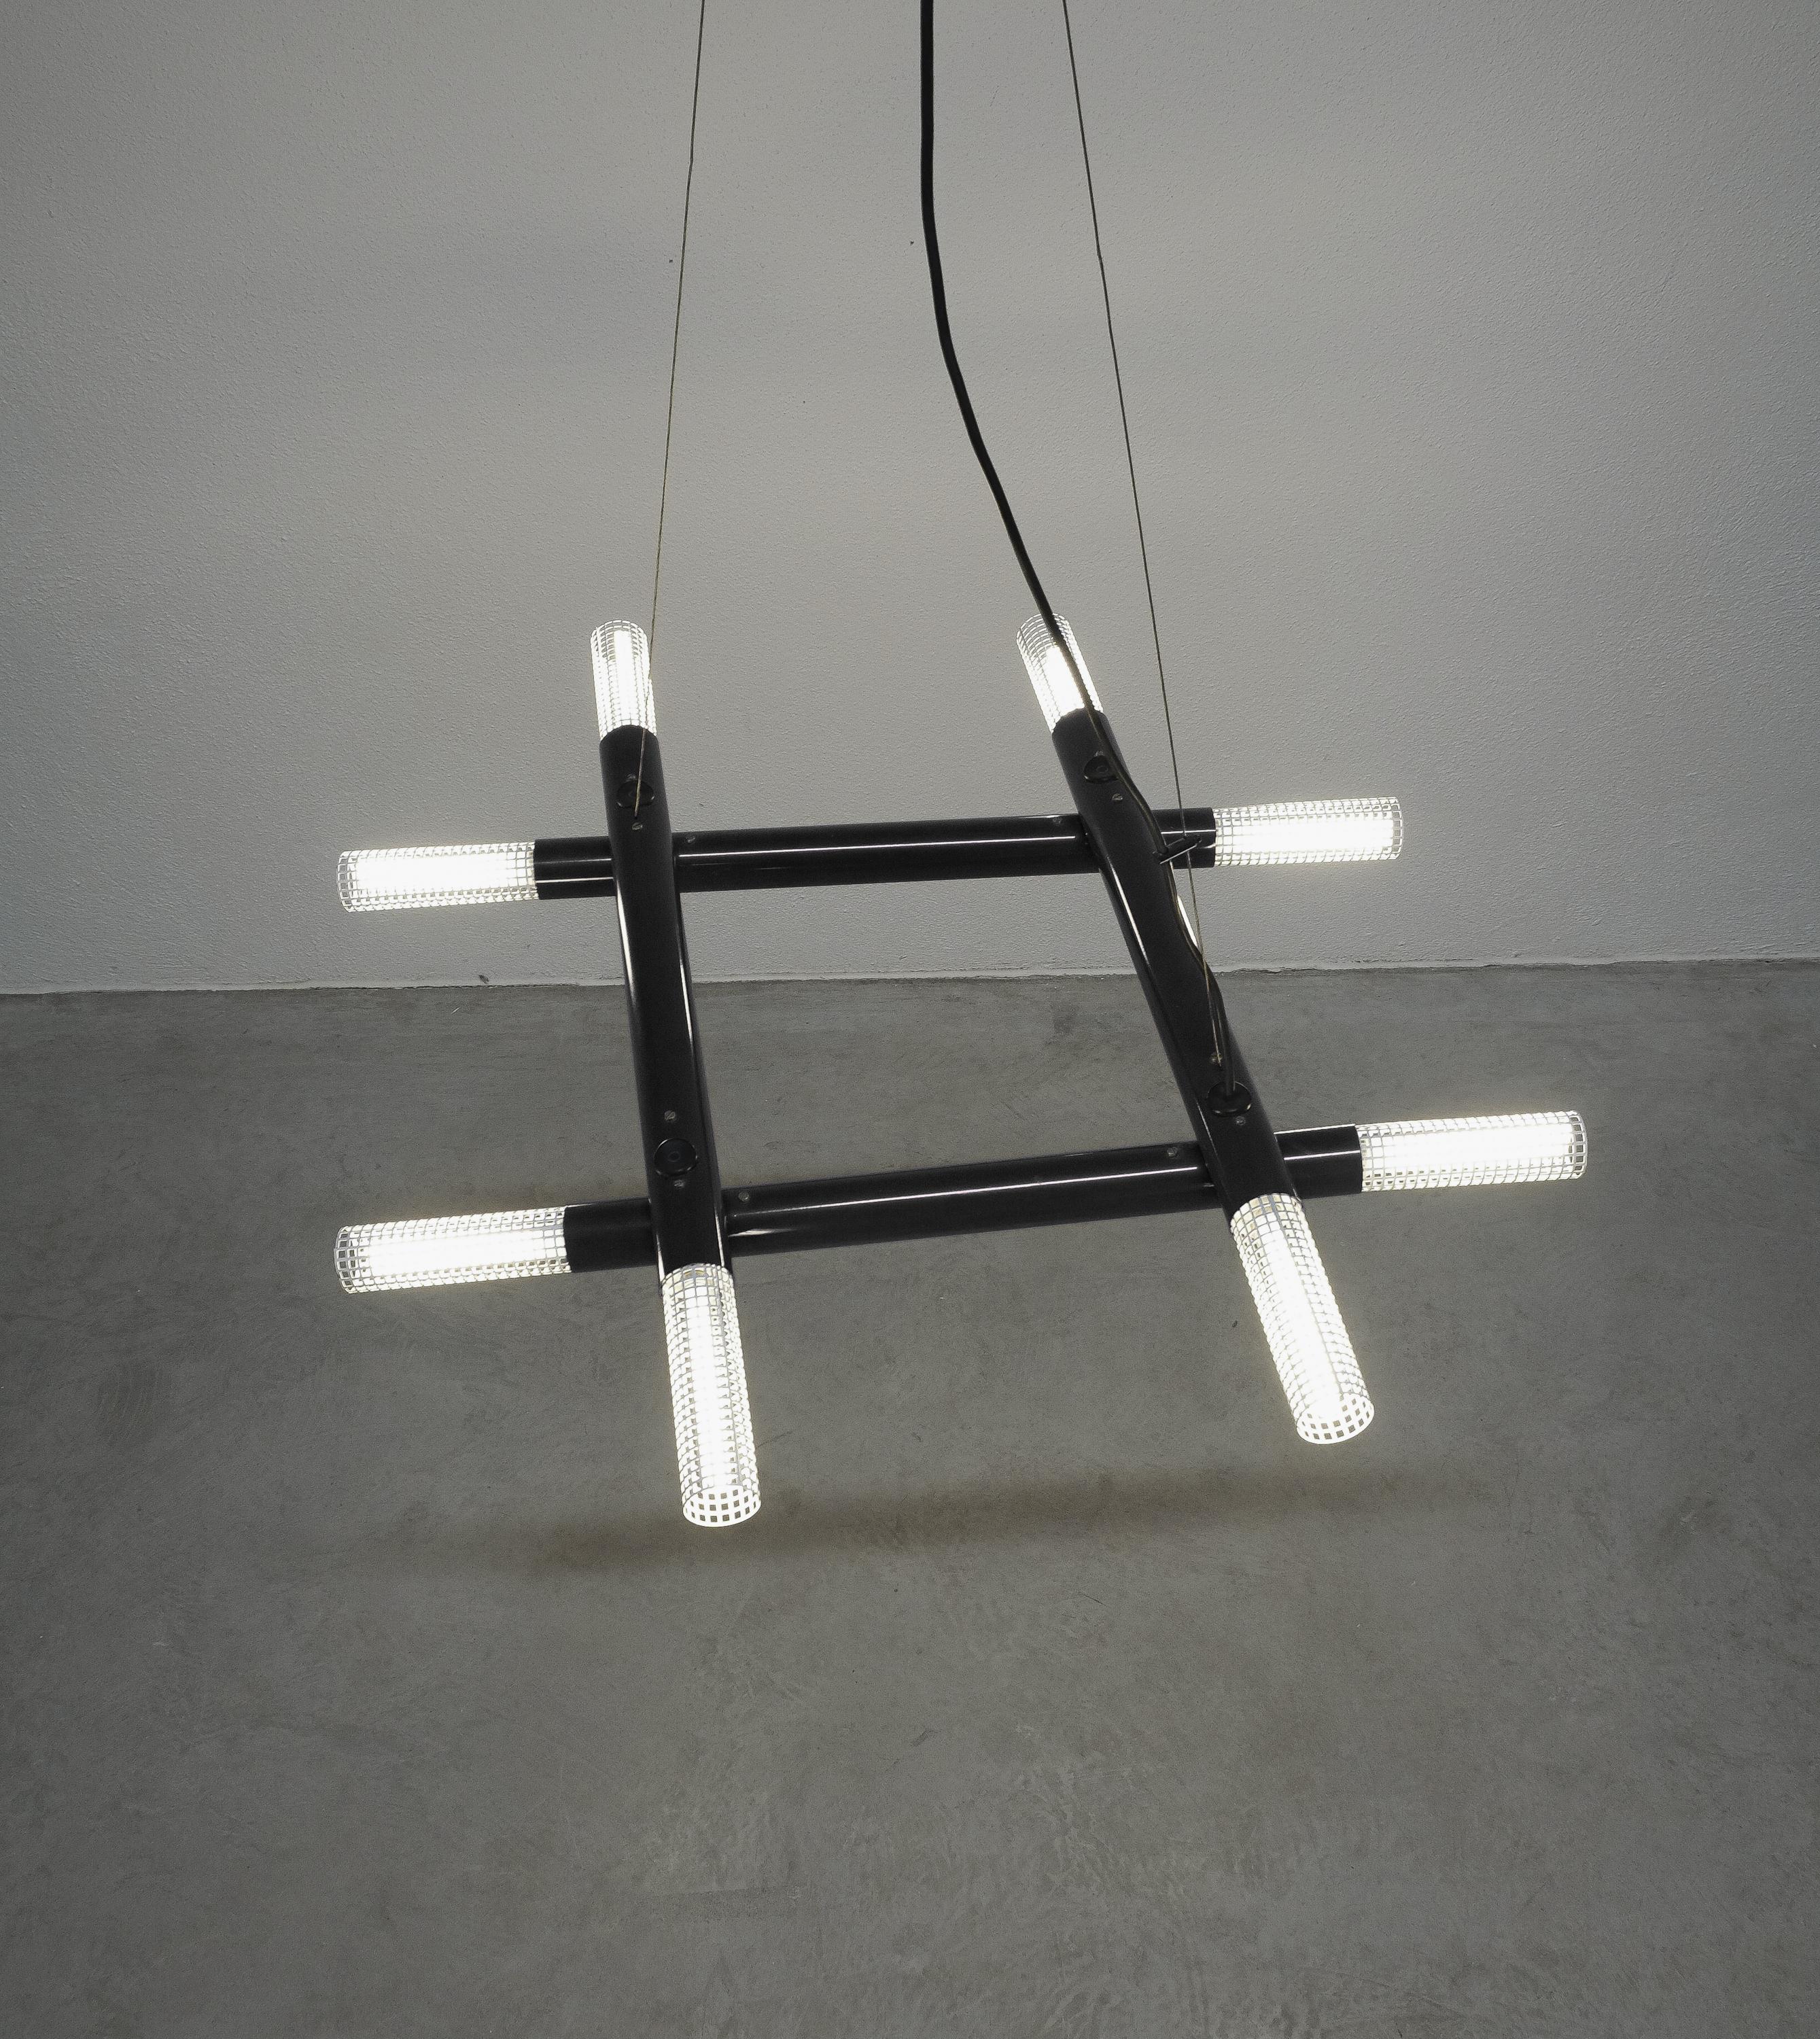 Lustre atomique postmoderne en métal noir, vers 1980

Lustre architectural contemporain des années 1980, Italie. Il s'illumine grâce à 8 ampoules cachées derrière des diffuseurs en métal perforé blanc. Il peut être réglé en faisant pivoter les